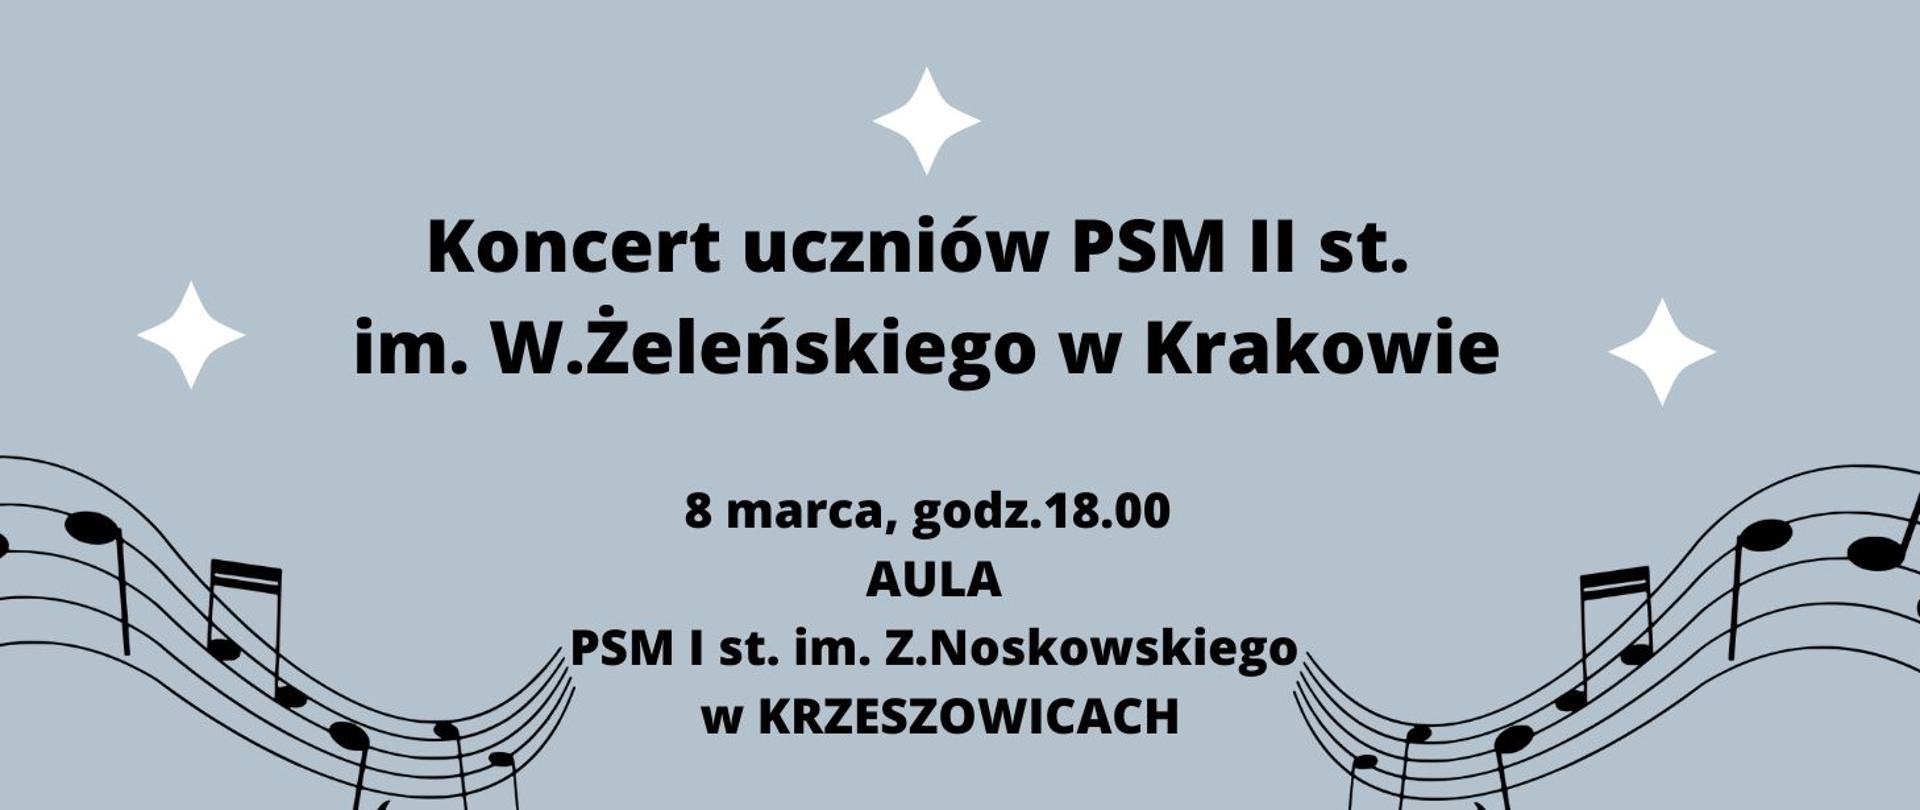 Na szarym tle napis koncert uczniów PSM II st. w Krzeszowicach 8 marca godz. 18.00